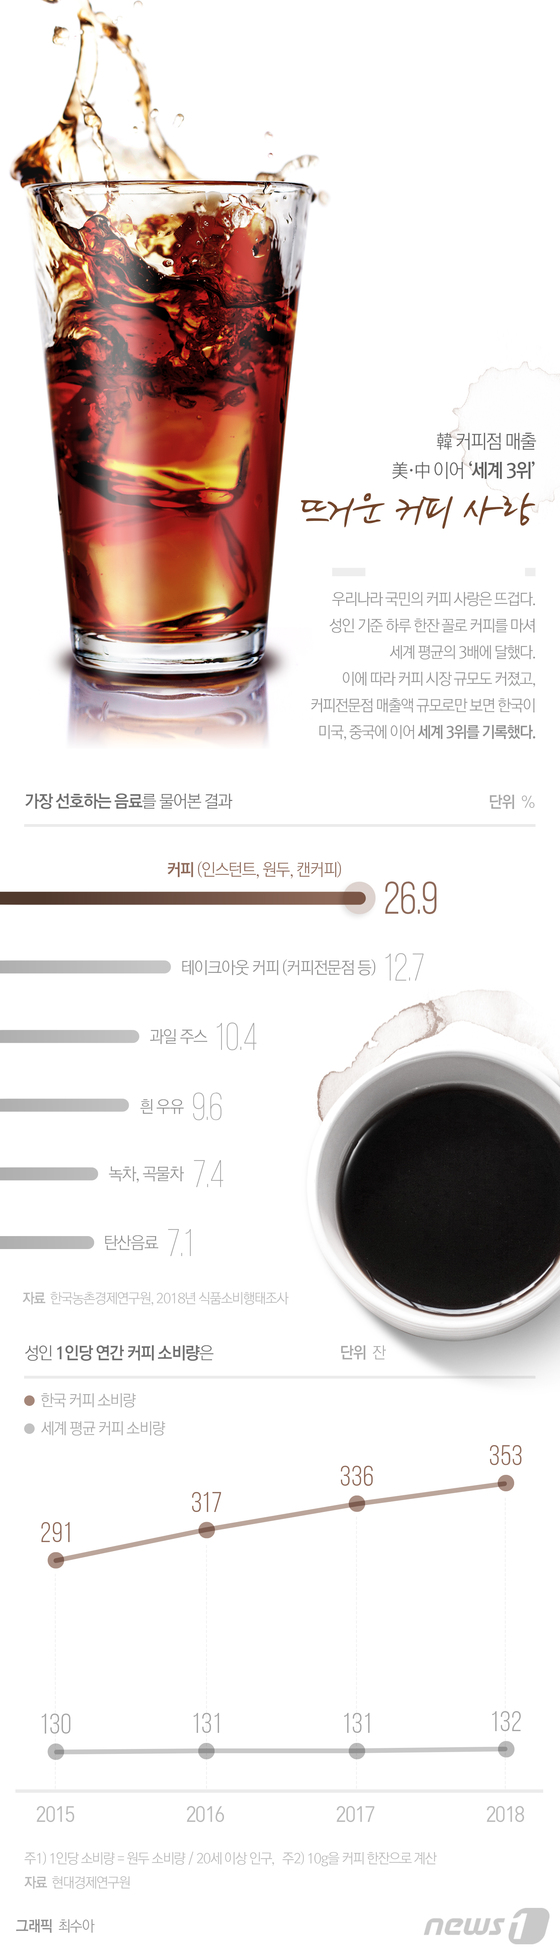 [그래픽뉴스] 韓 커피점 매출 '세계 3위'…뜨거운 커피 사랑